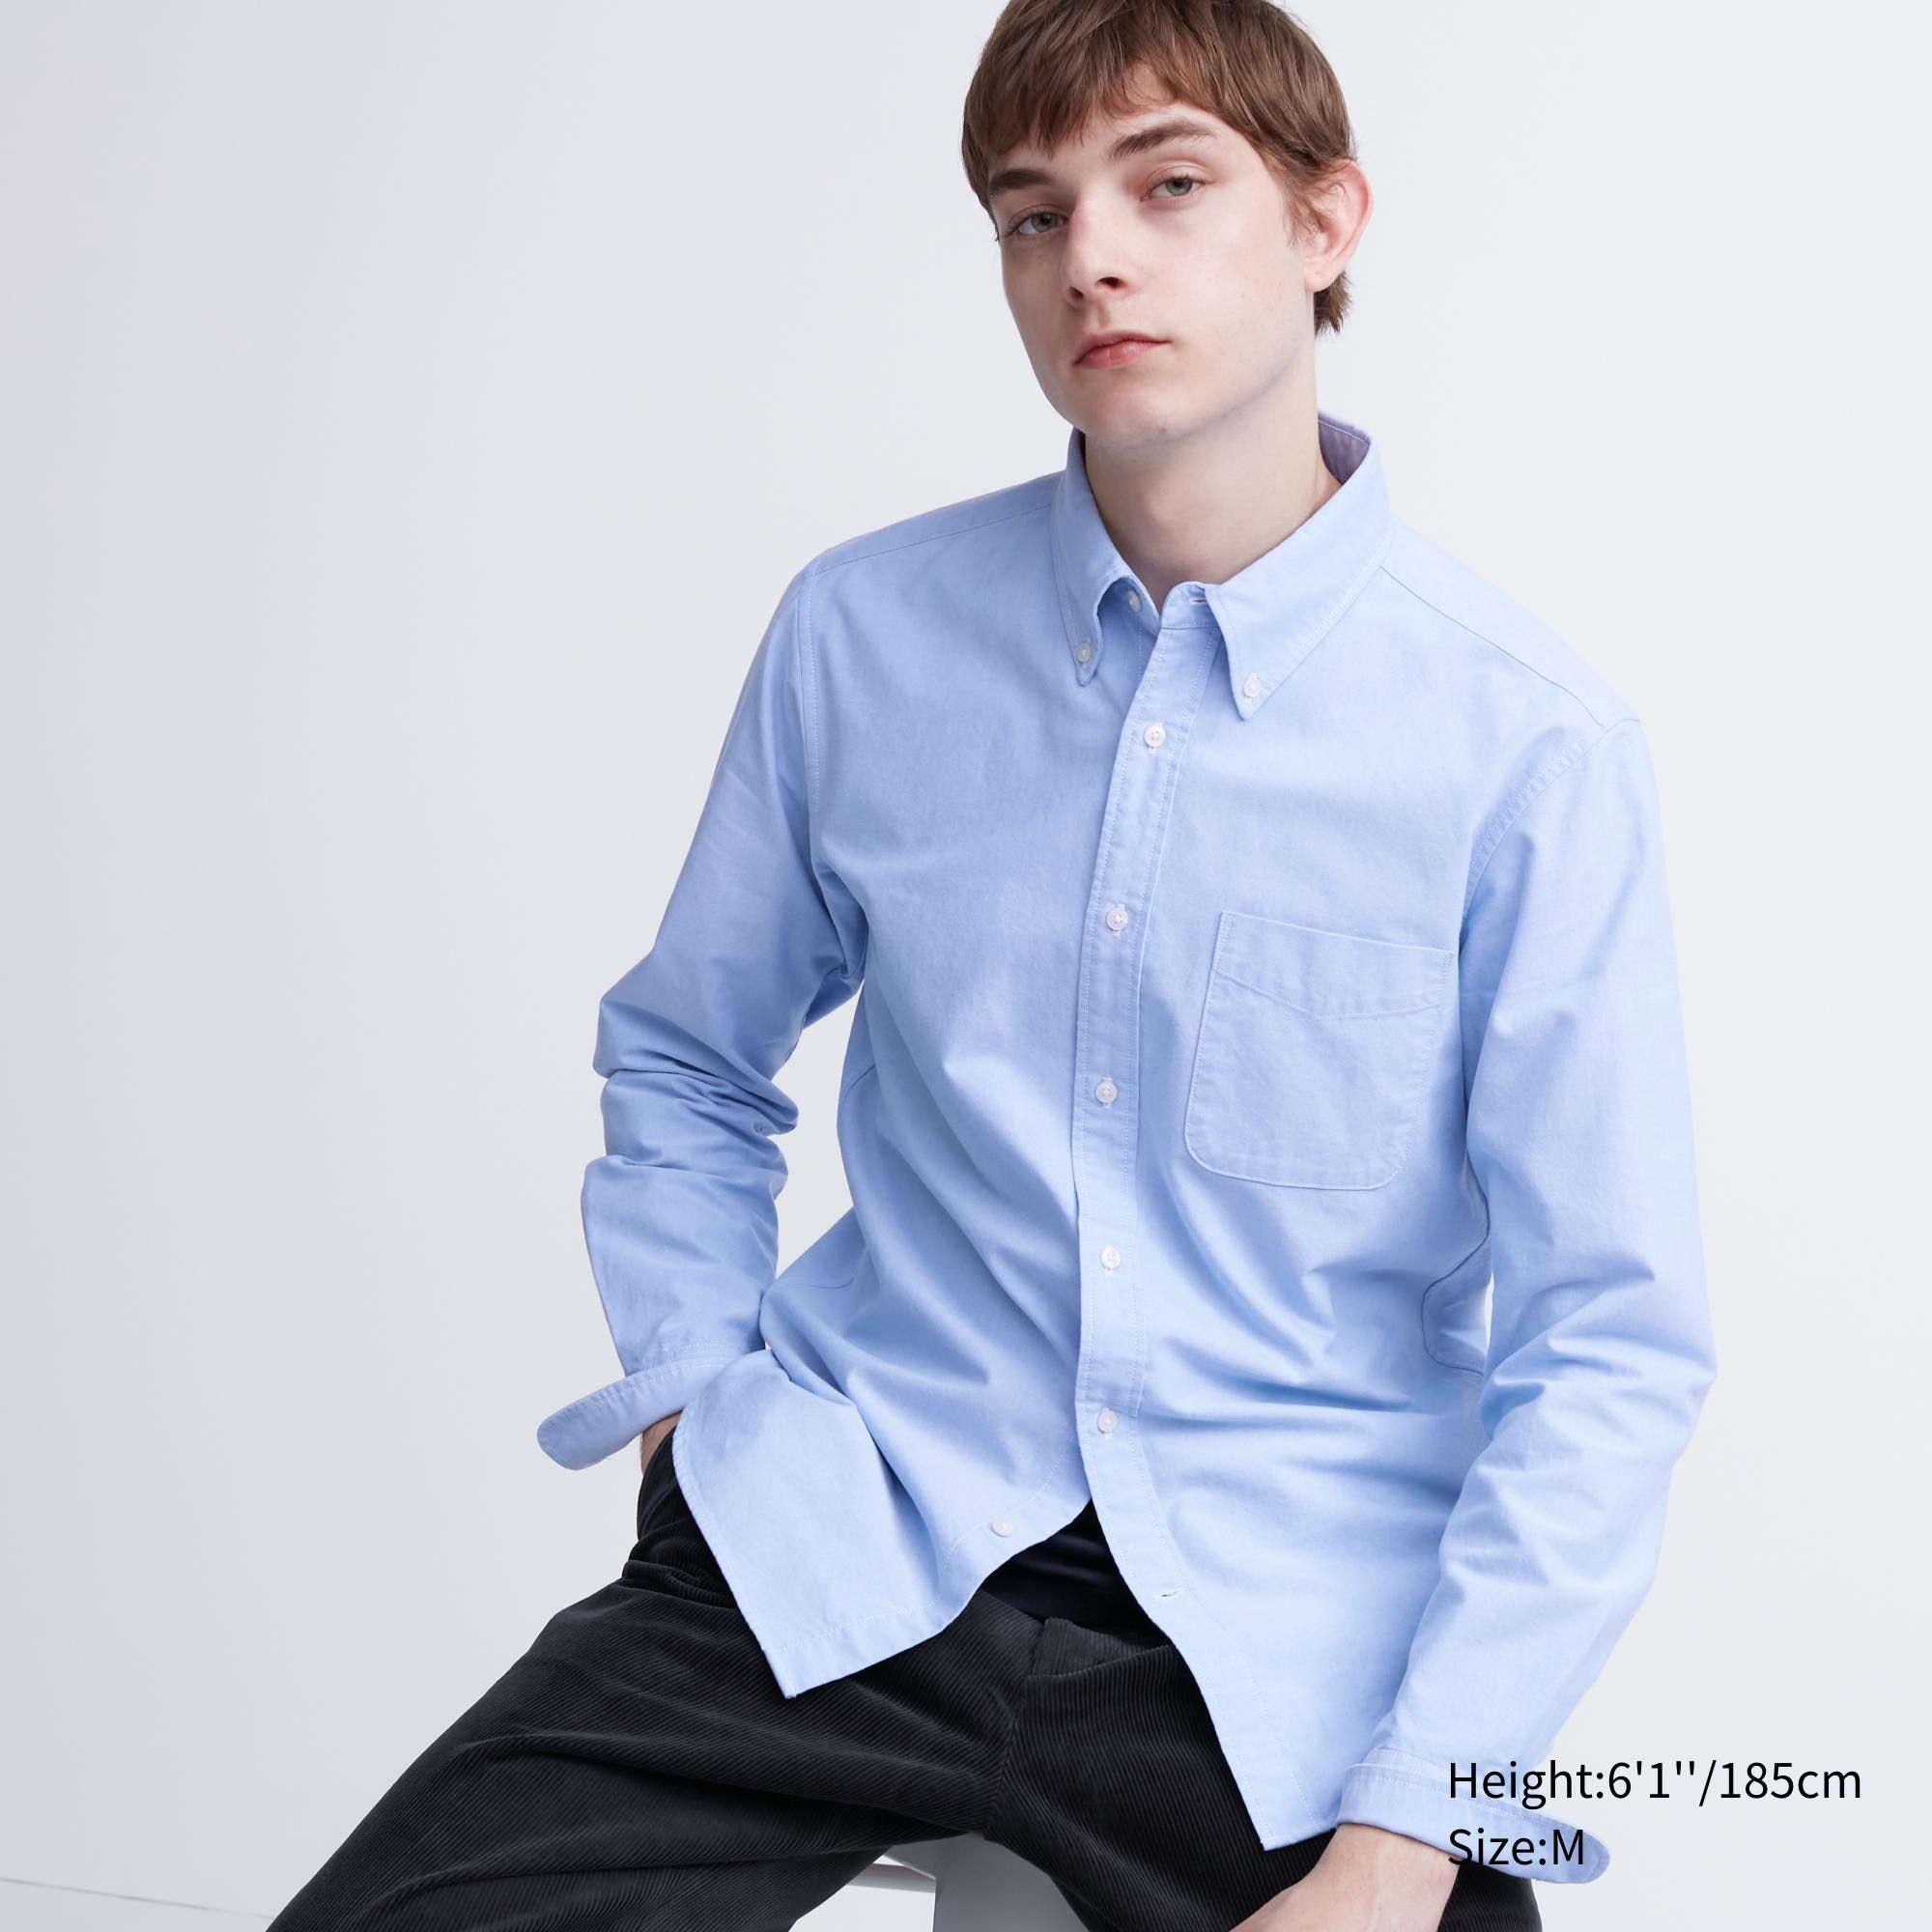 Uniqlo Mens Shirts  Men Oxford Shirt ButtonDown Collar Off White   Iniziative Immobiliari